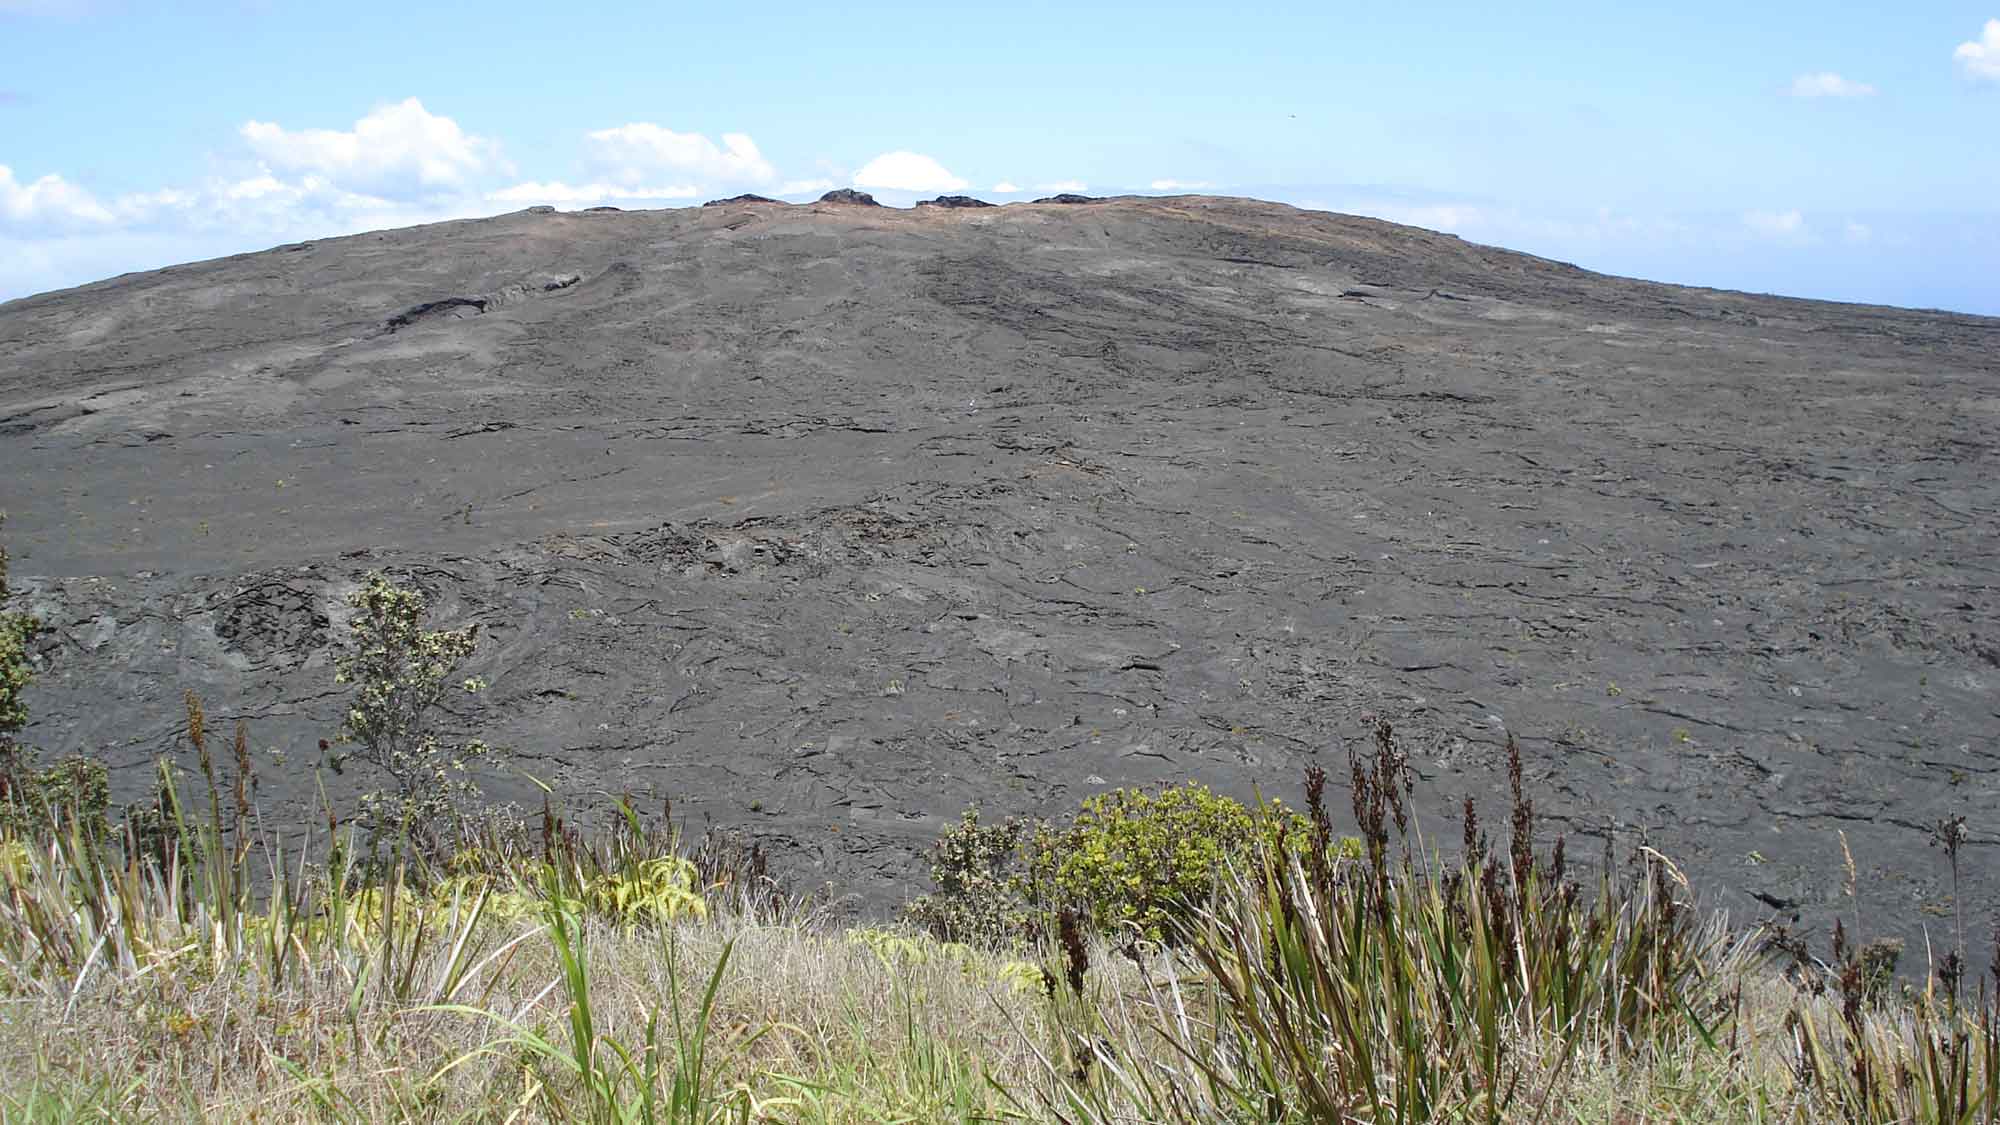 Photograph of a Hawaiian shield volcano.